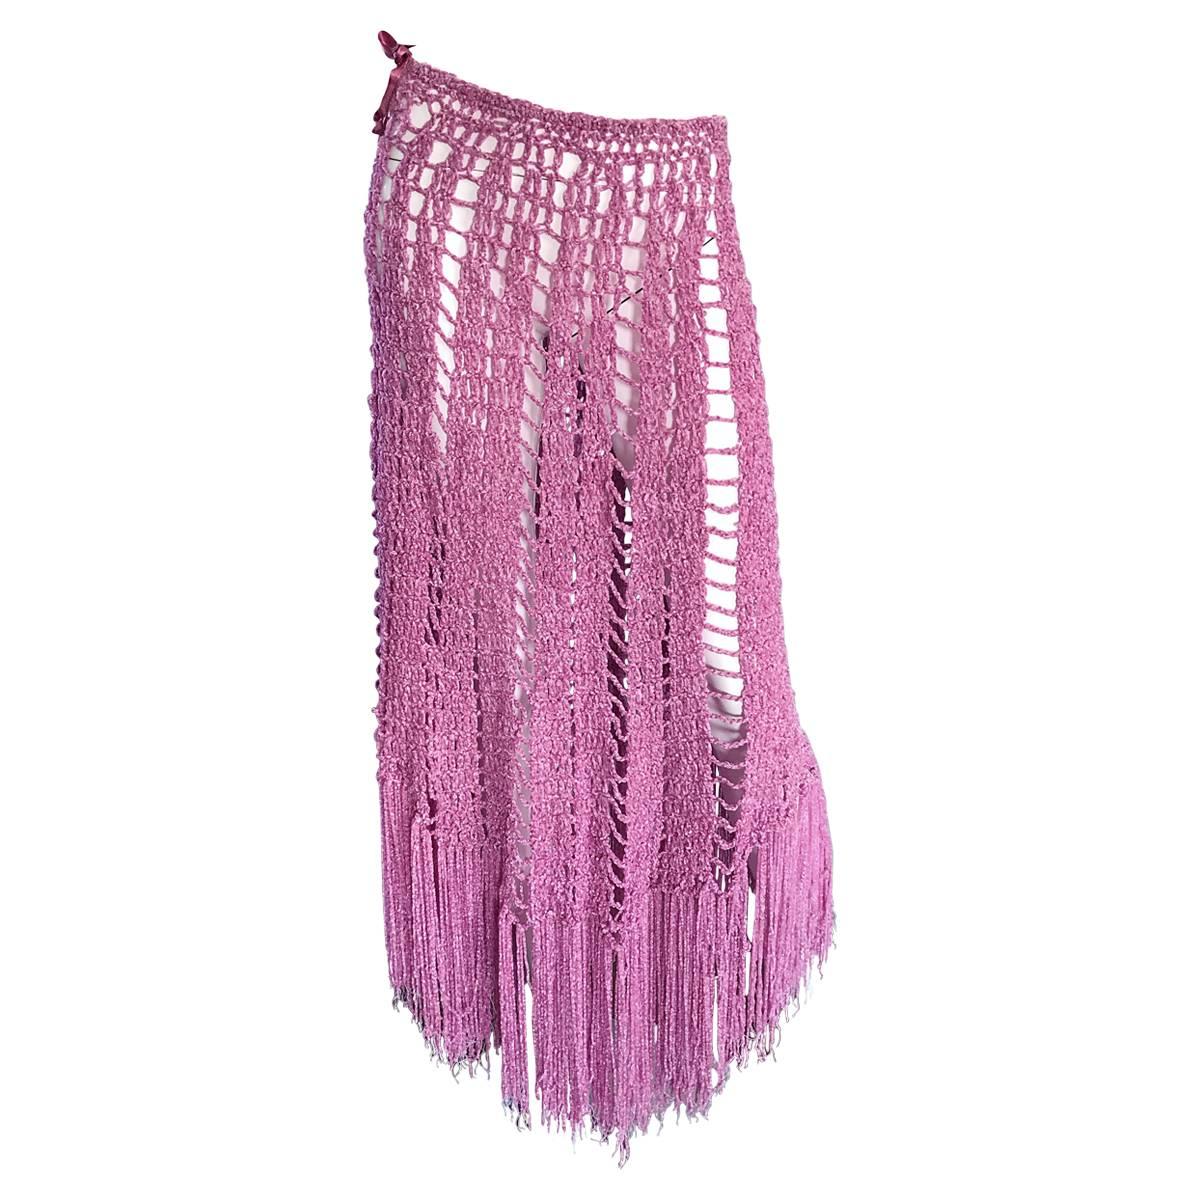 Joseph Magnin 1970s Brand New Pink Vintage Italian Crochet Skirt, Dress or Cape